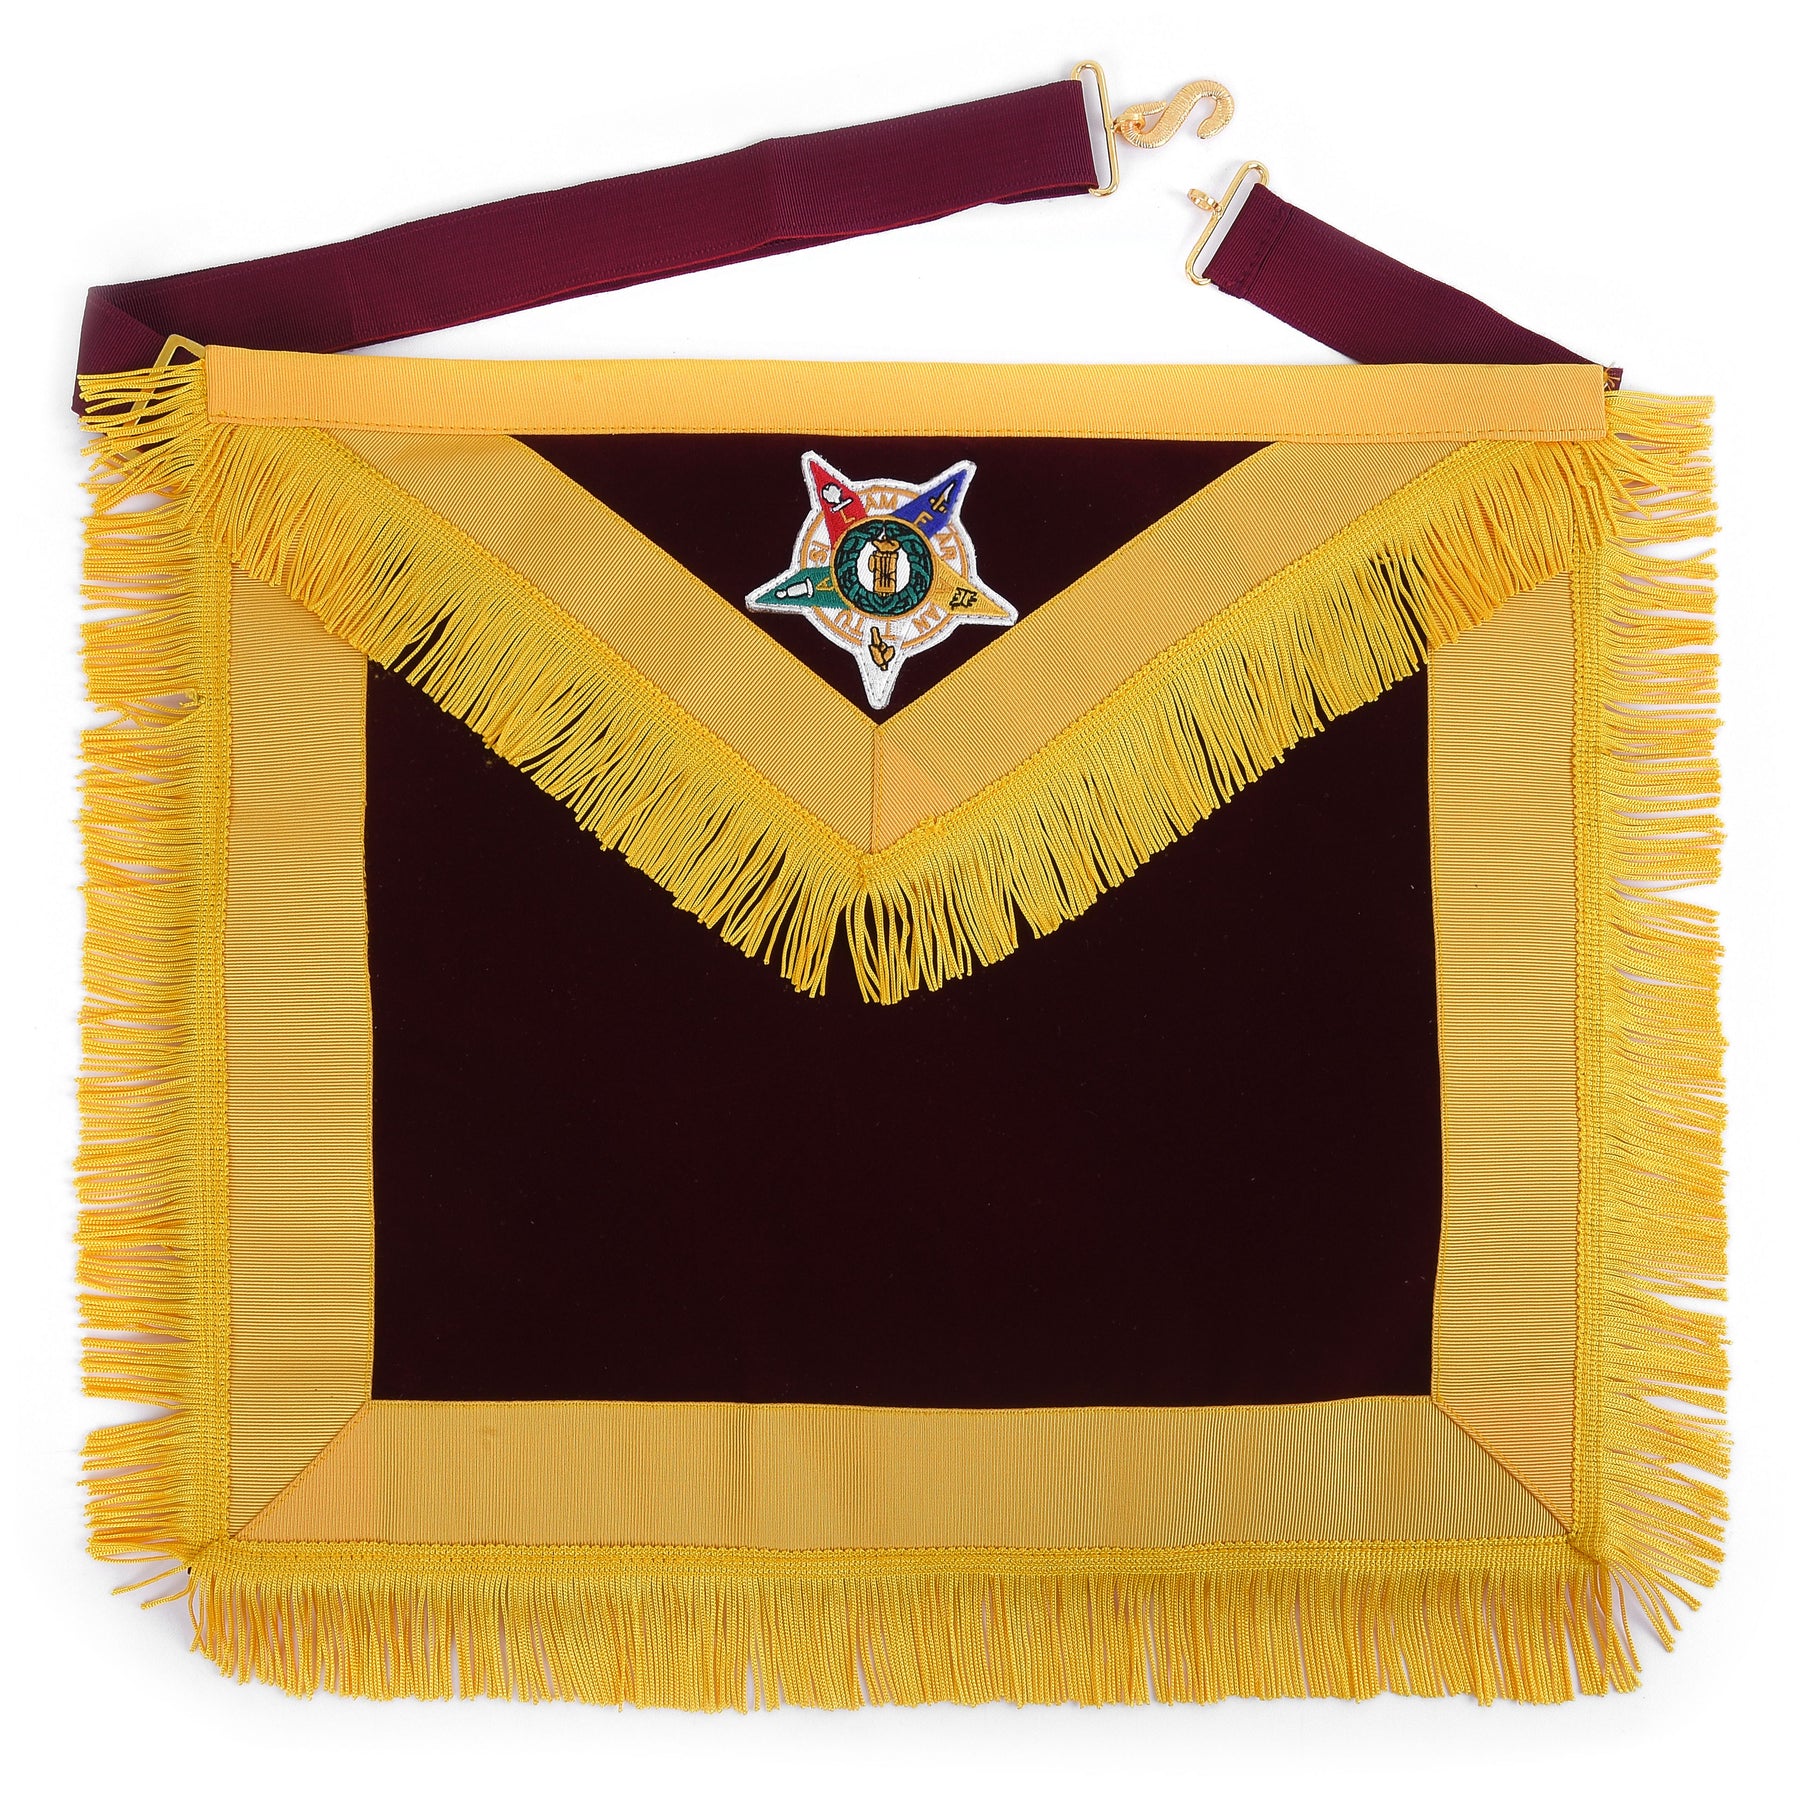 Order of Amaranth Apron - Maroon Velvet With Yellow Borders & Fringe - Bricks Masons